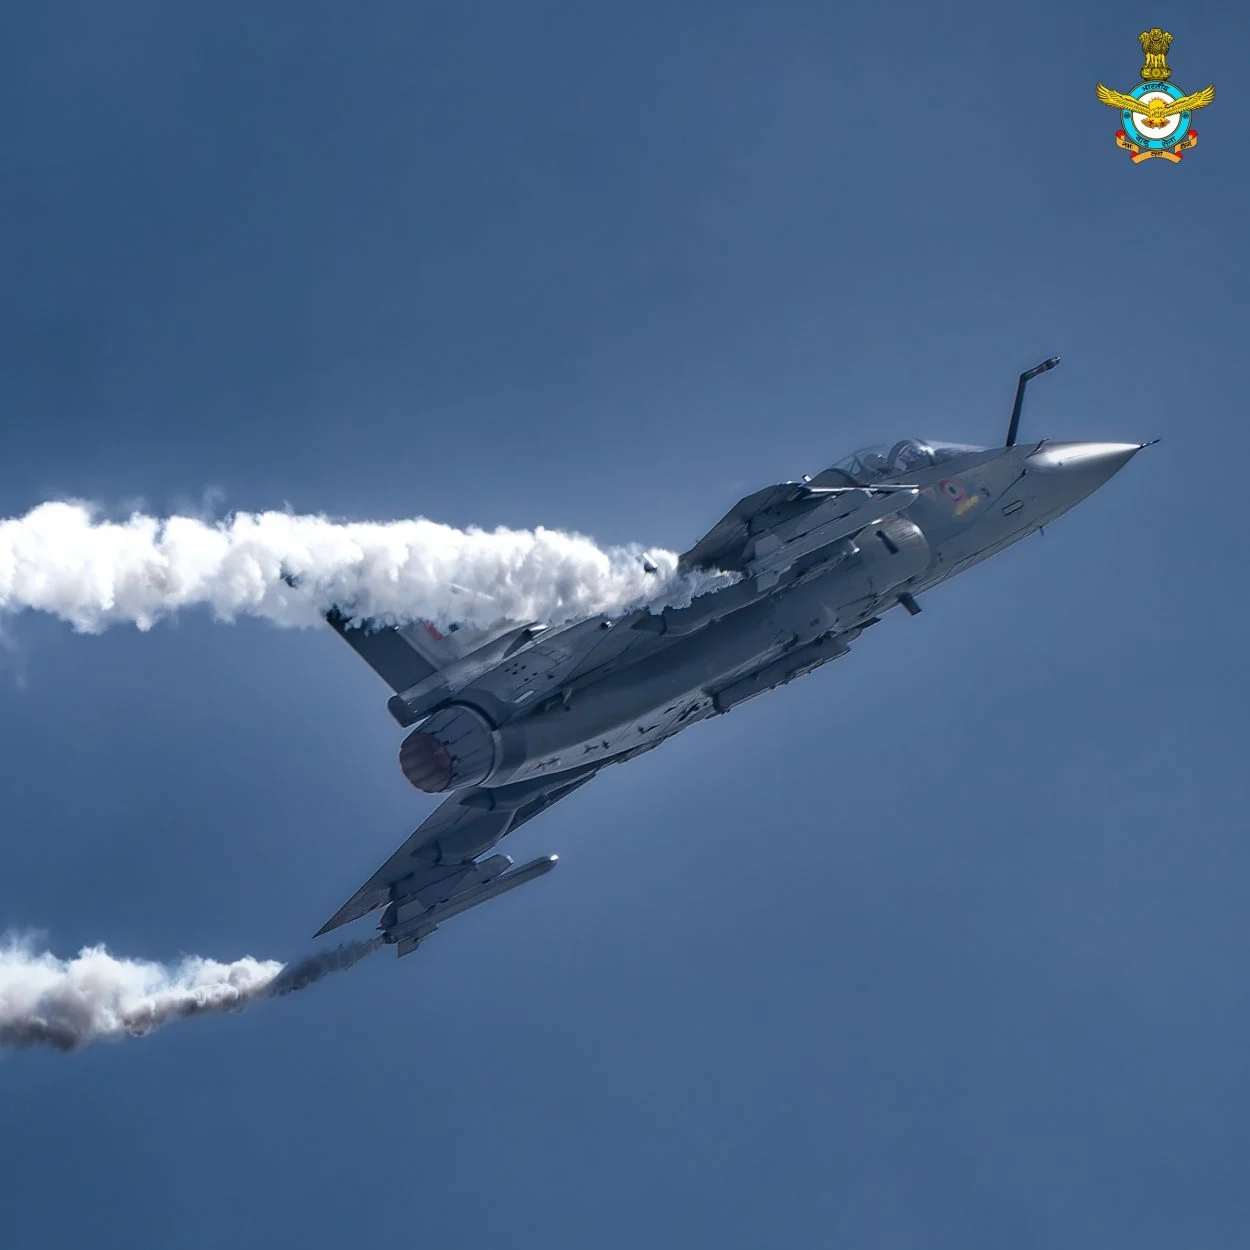 مقاتلة سلاح الجو الهندي تيجاس تقدم عرضًا في حفل افتتاح معرض سنغافورة الجوي في 15 فبراير 2022.